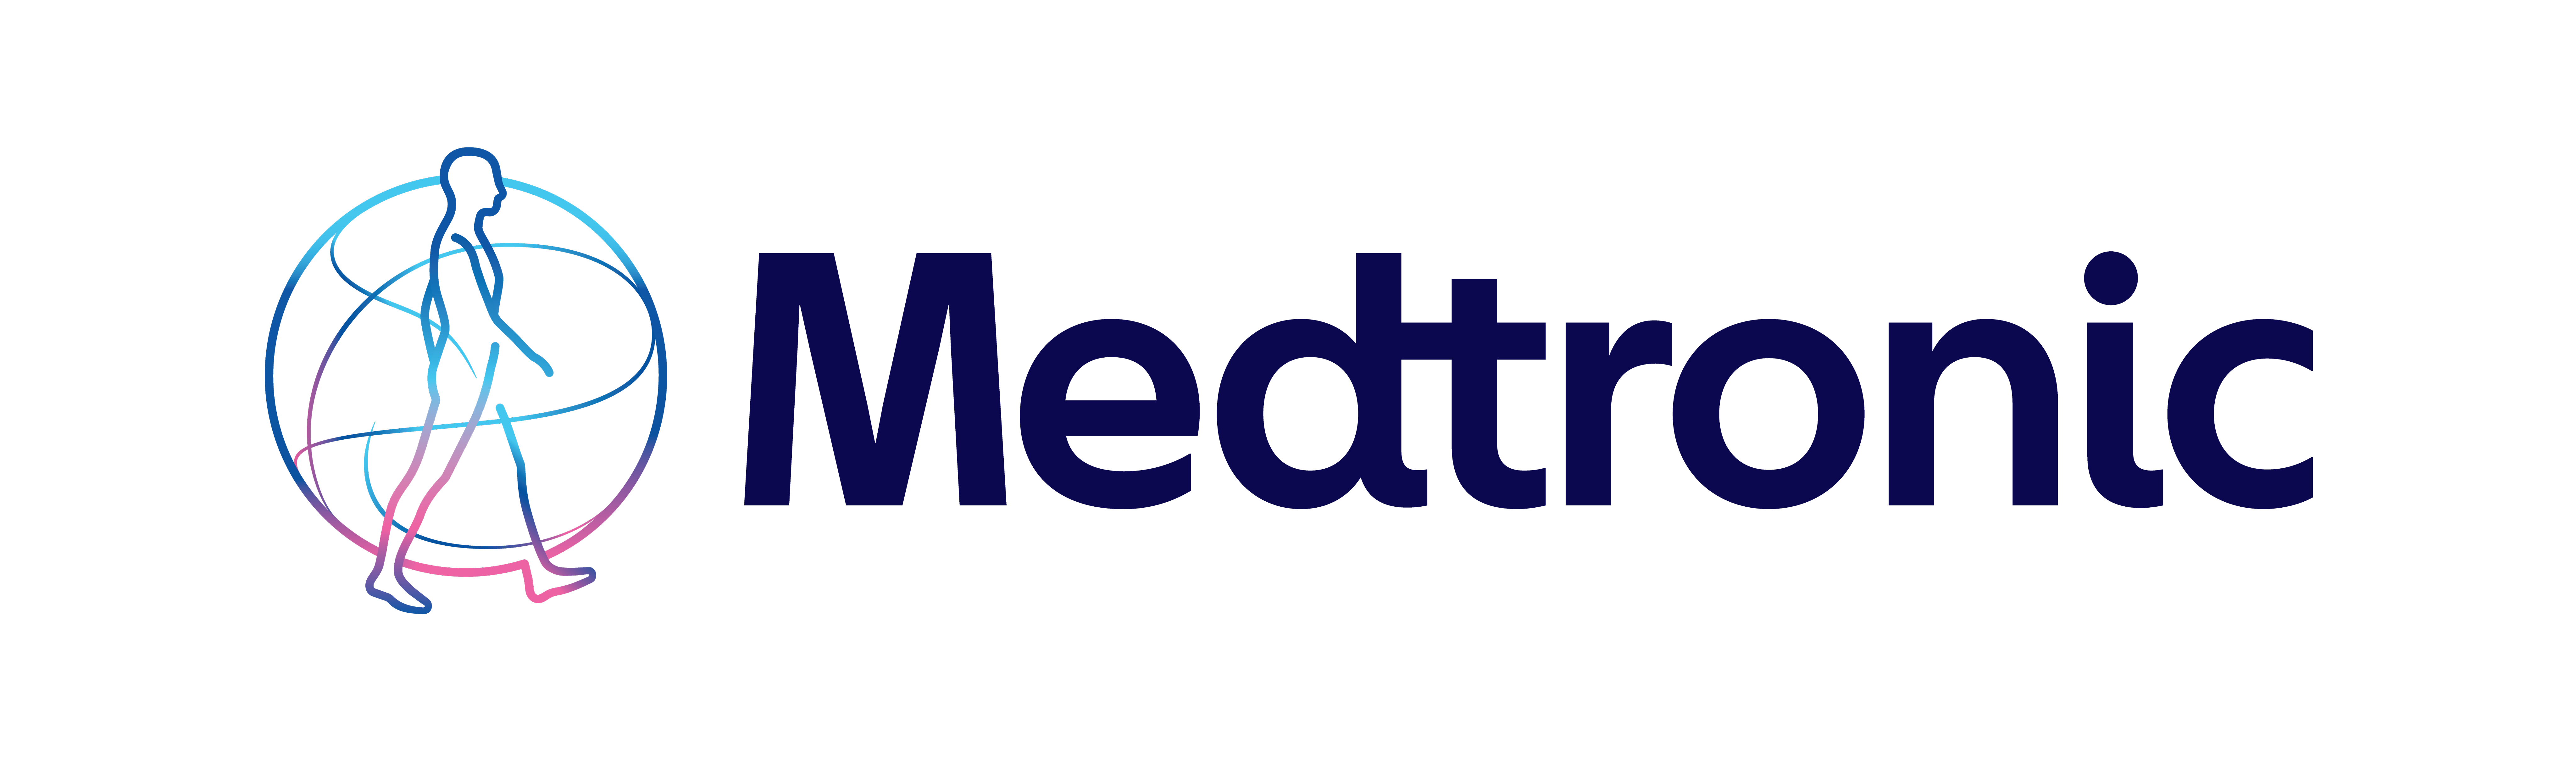 medtronic_logo